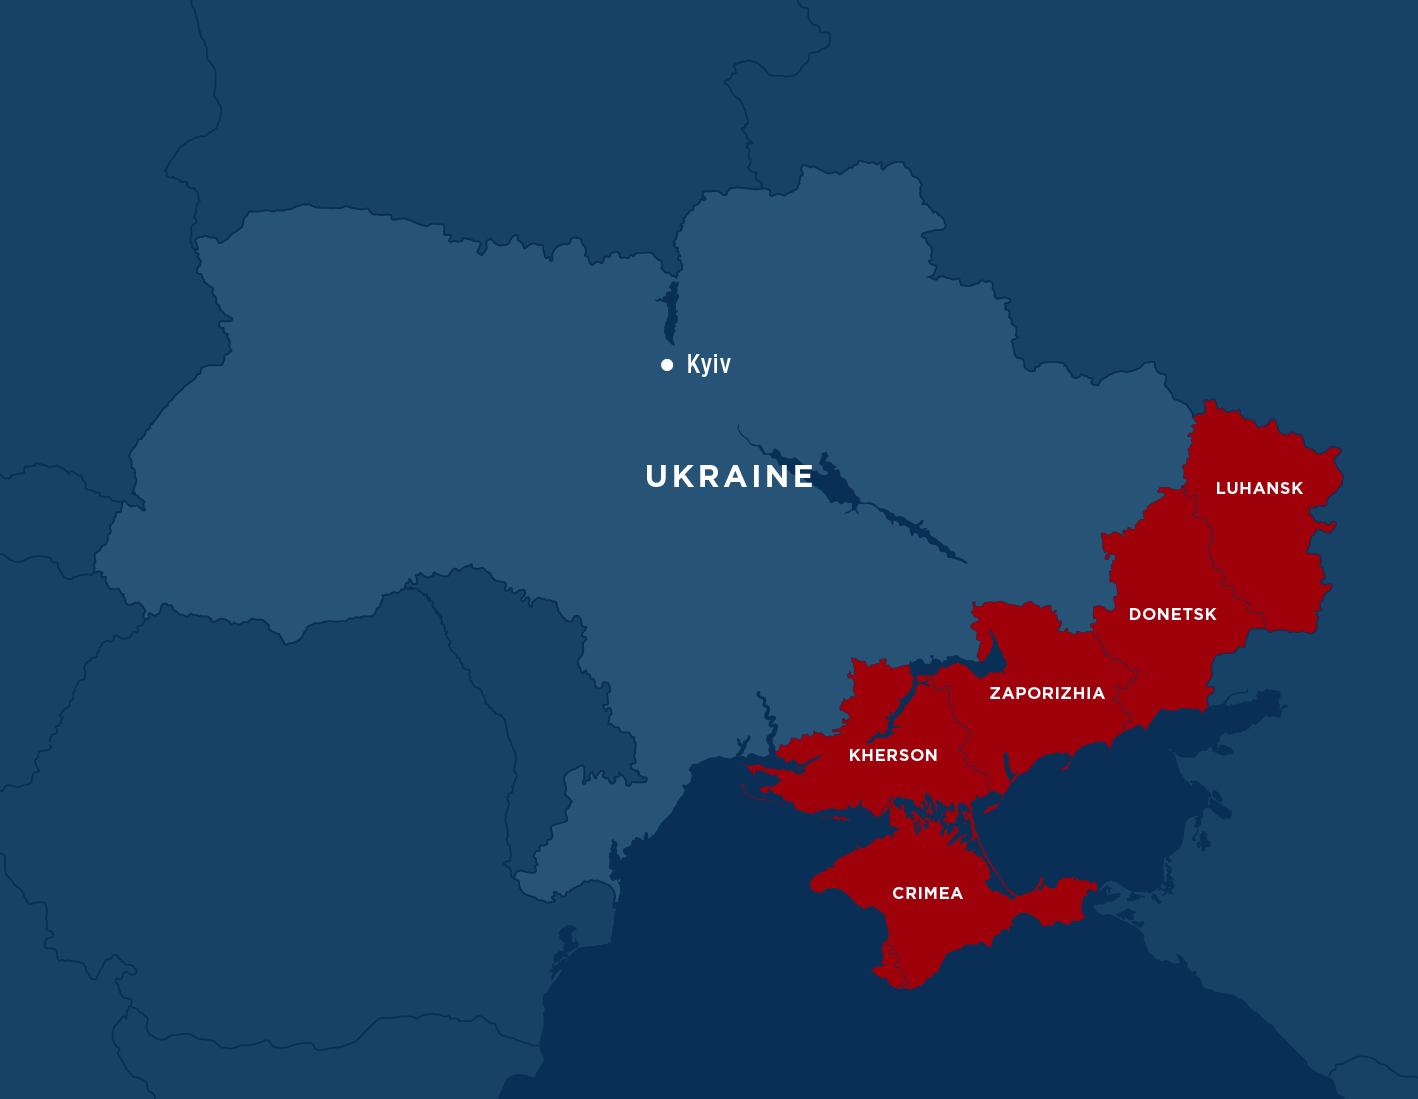 GG RiskMapAnalysis Ukraine V1 ?width=1800&name=GG RiskMapAnalysis Ukraine V1 